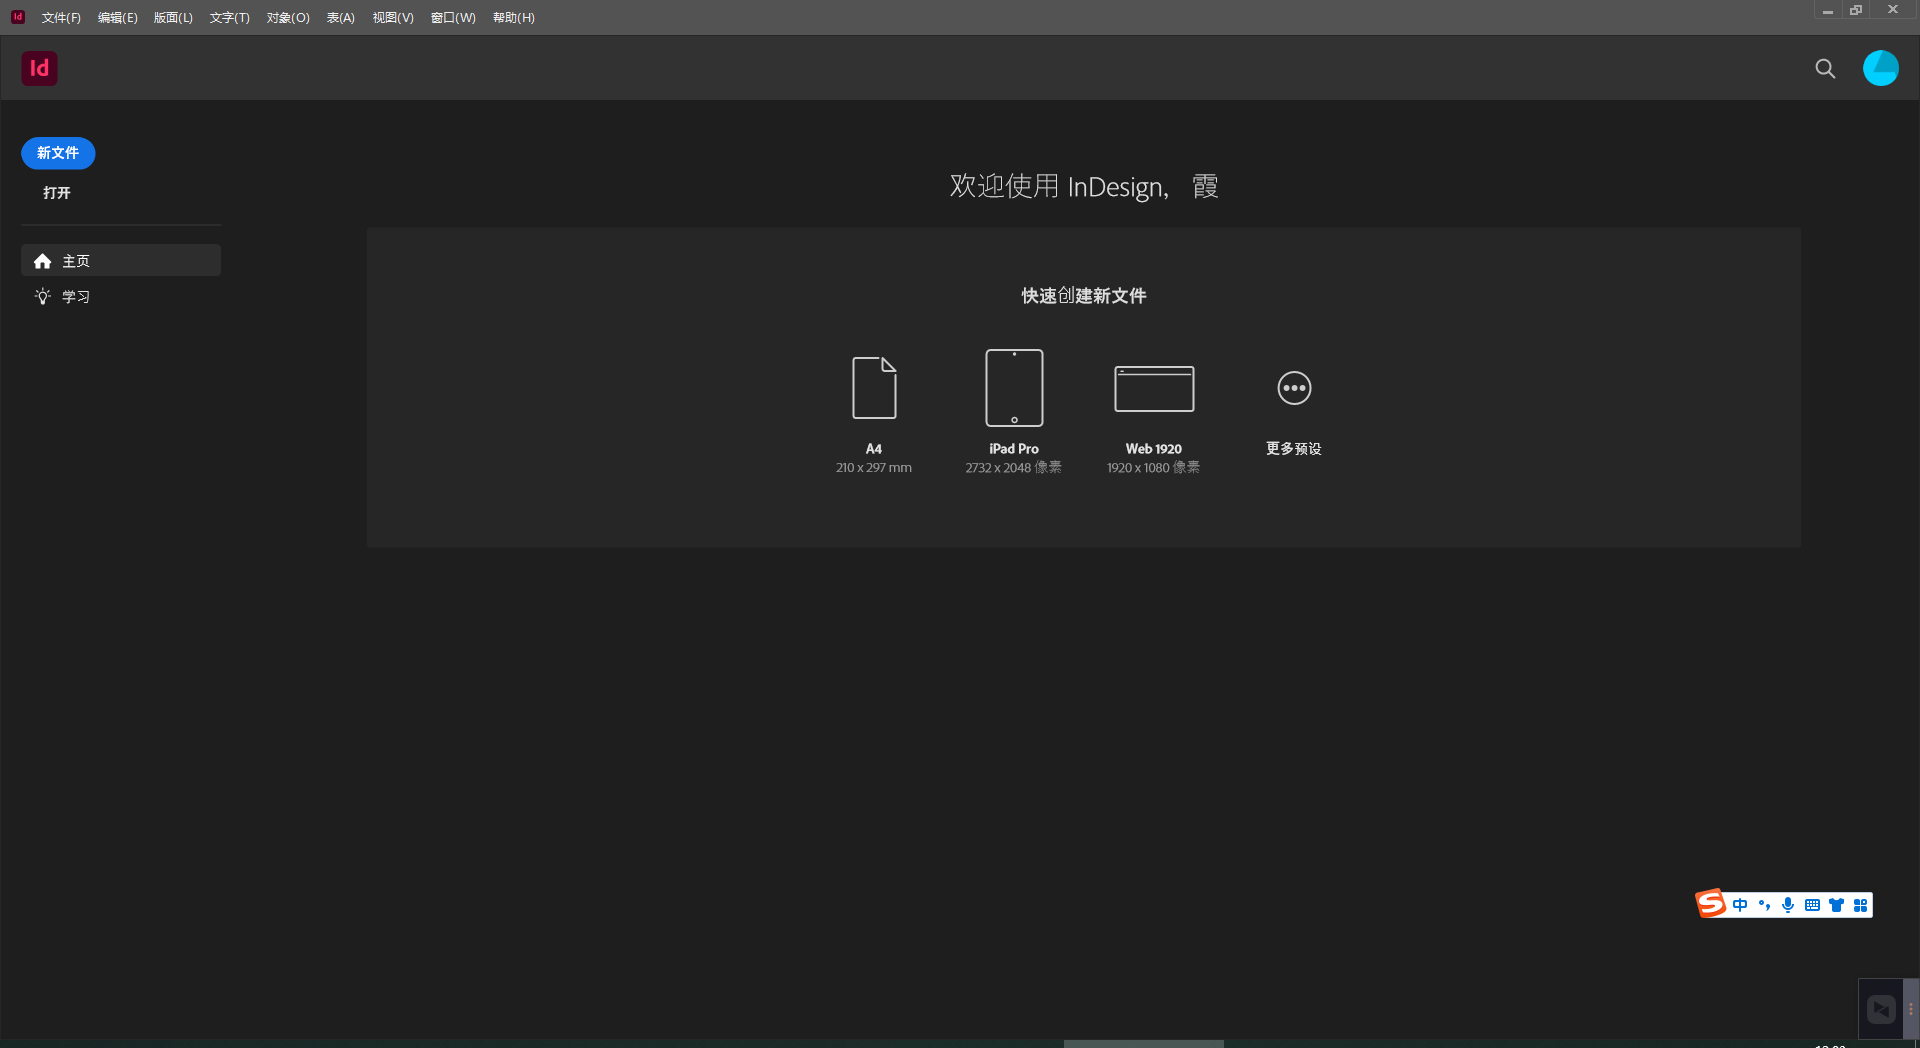 Adobe InDesign 2023 v18.5.0.57 for windows instal free